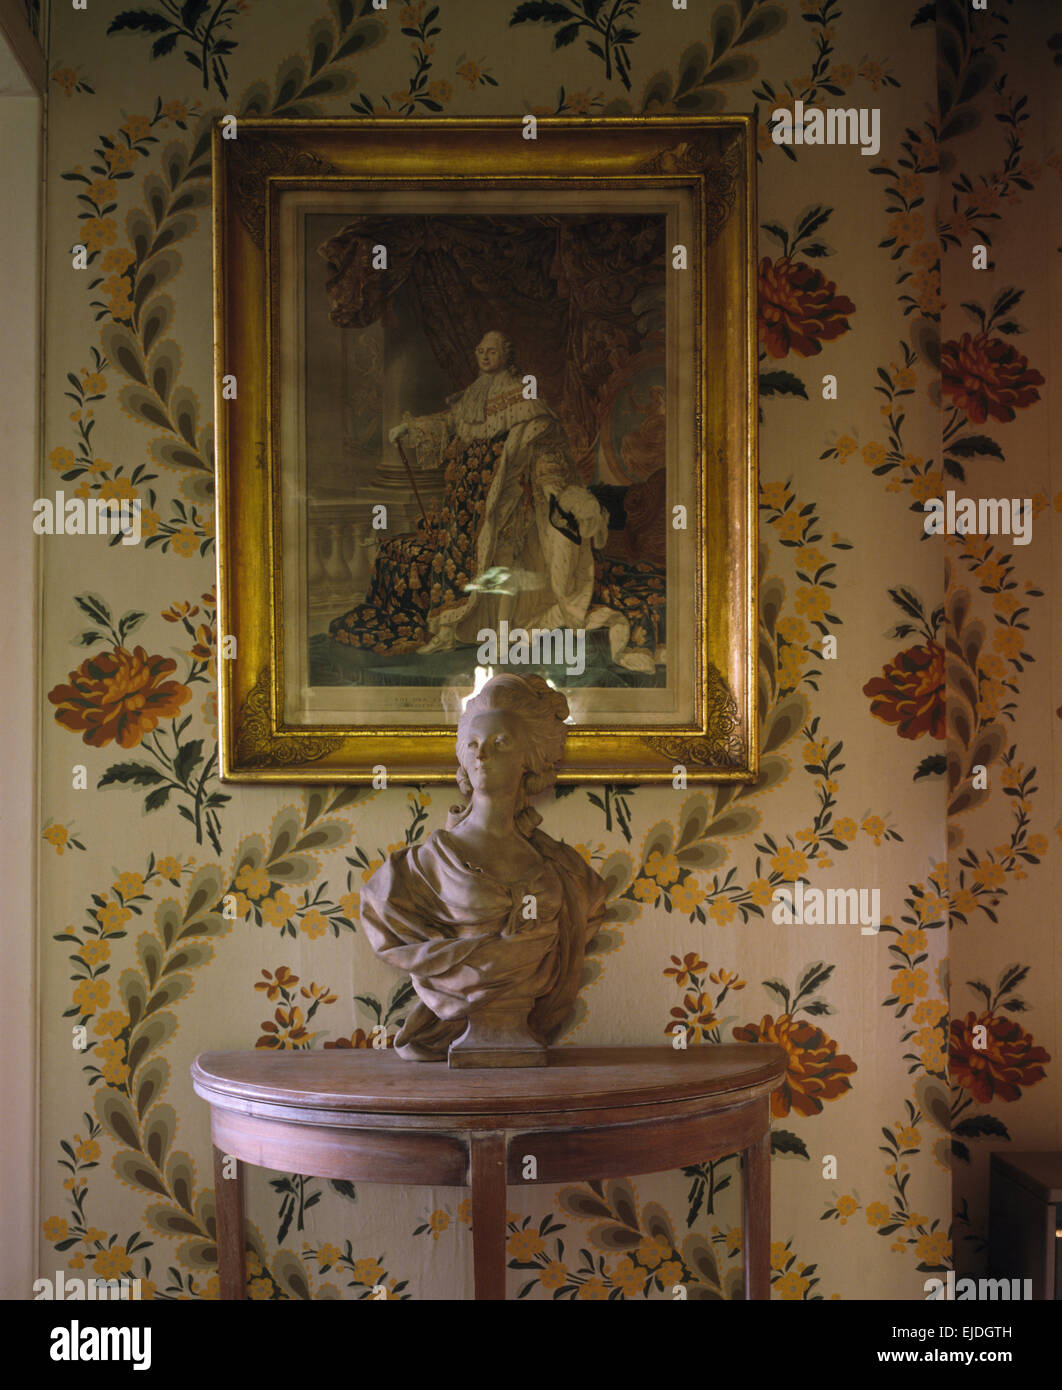 Photo sur le mur au-dessus d'une table console peinte avec un buste en marbre de style géorgien dans un hall des années 90 avec papier peint fleuri Banque D'Images